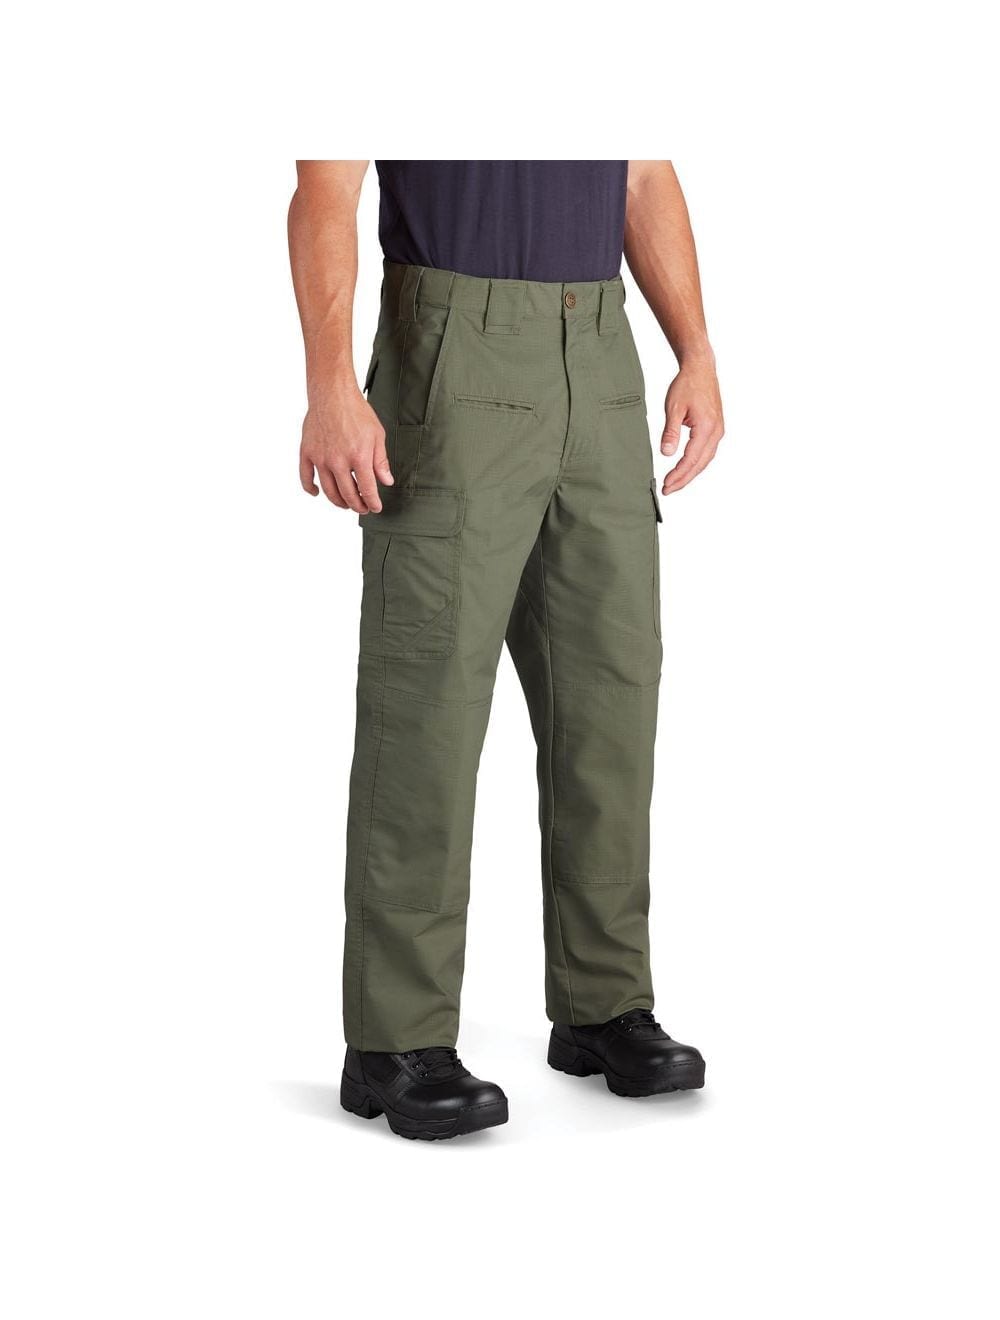 Shop Ripstop Cotton BDU Fatigue Pants - Fatigues Army Navy Gear